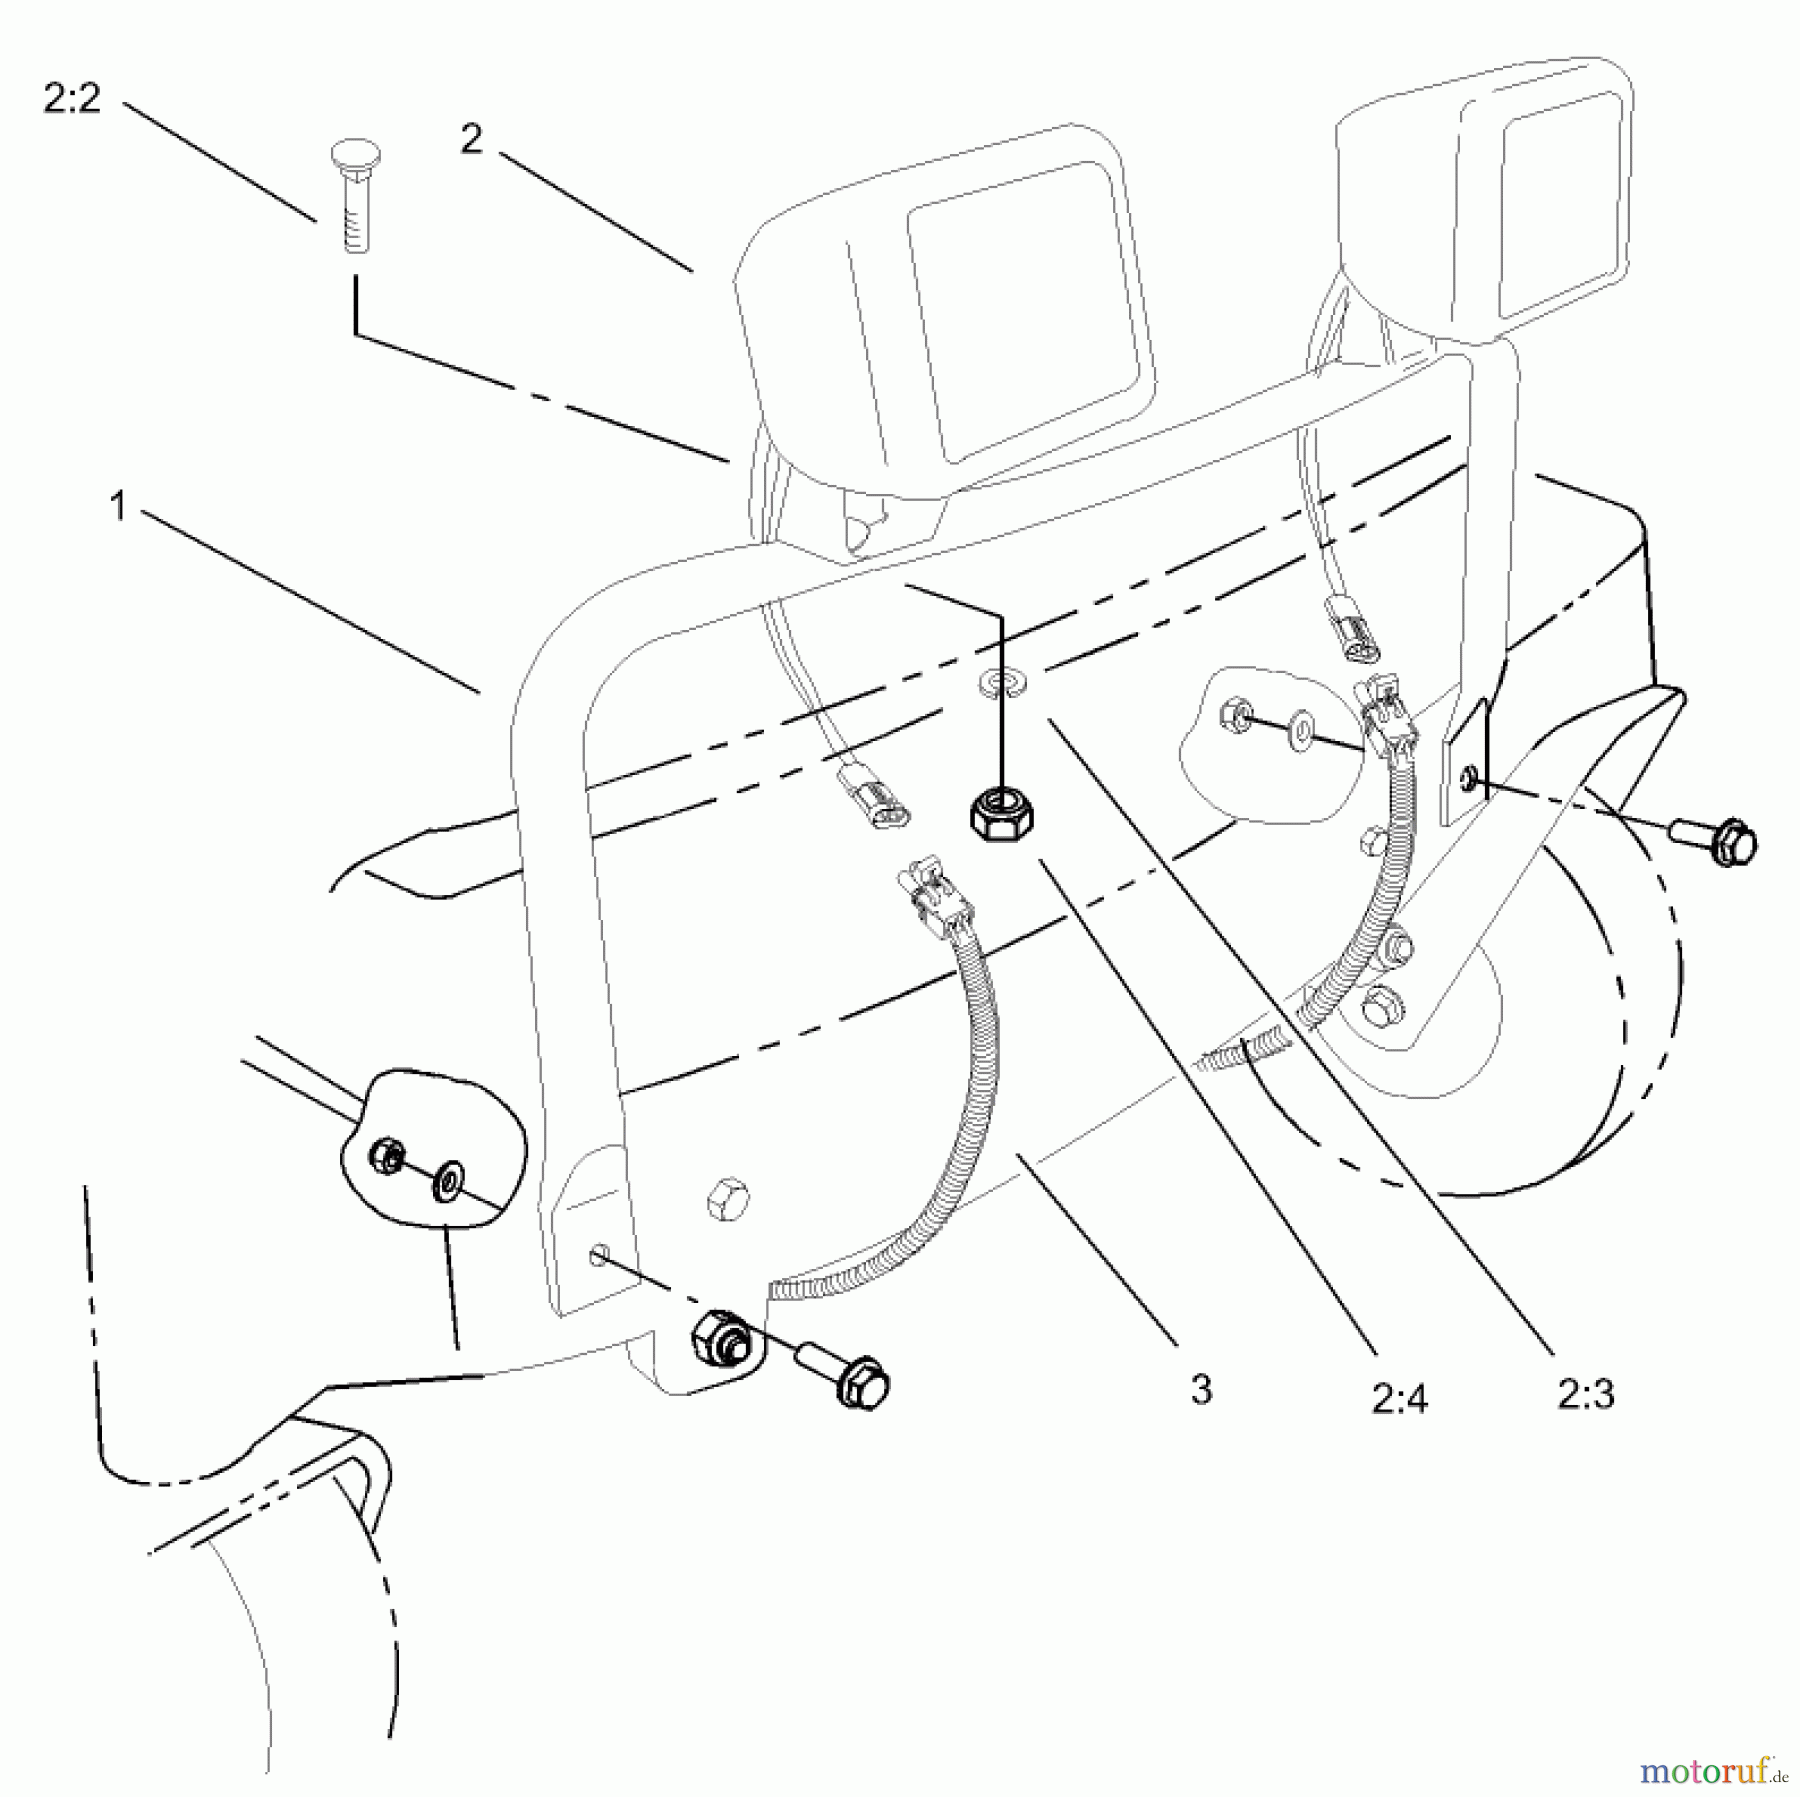  Toro Neu Accessories, Mower 107-9131 - Toro Light Kit, Zero-Turn-Radius Riding Mower LAMP AND SUPPORT ASSEMBLY